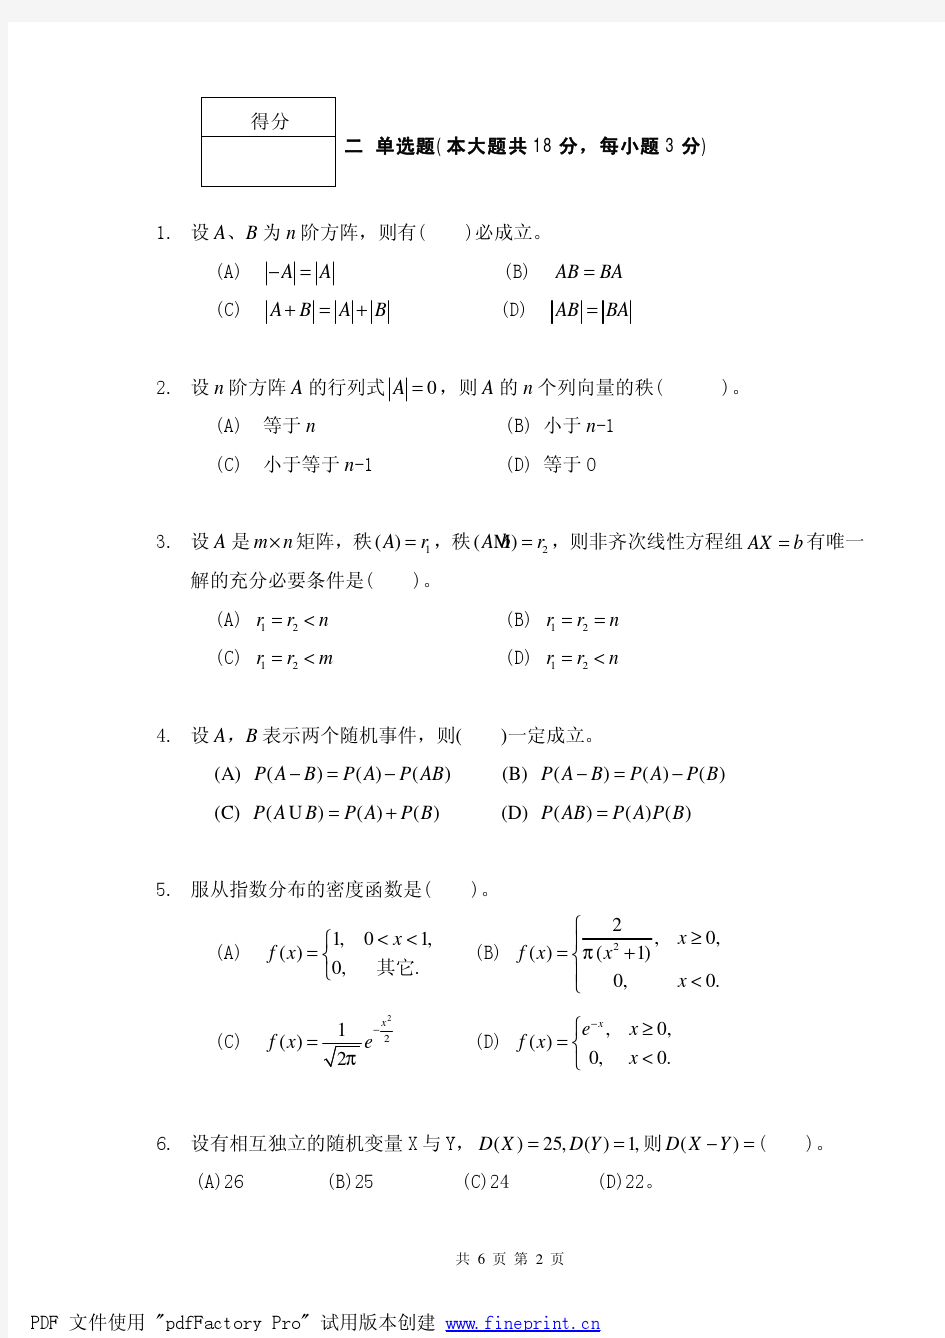 湖南农业大学东方科技学院课程考核试卷概率论线性代数